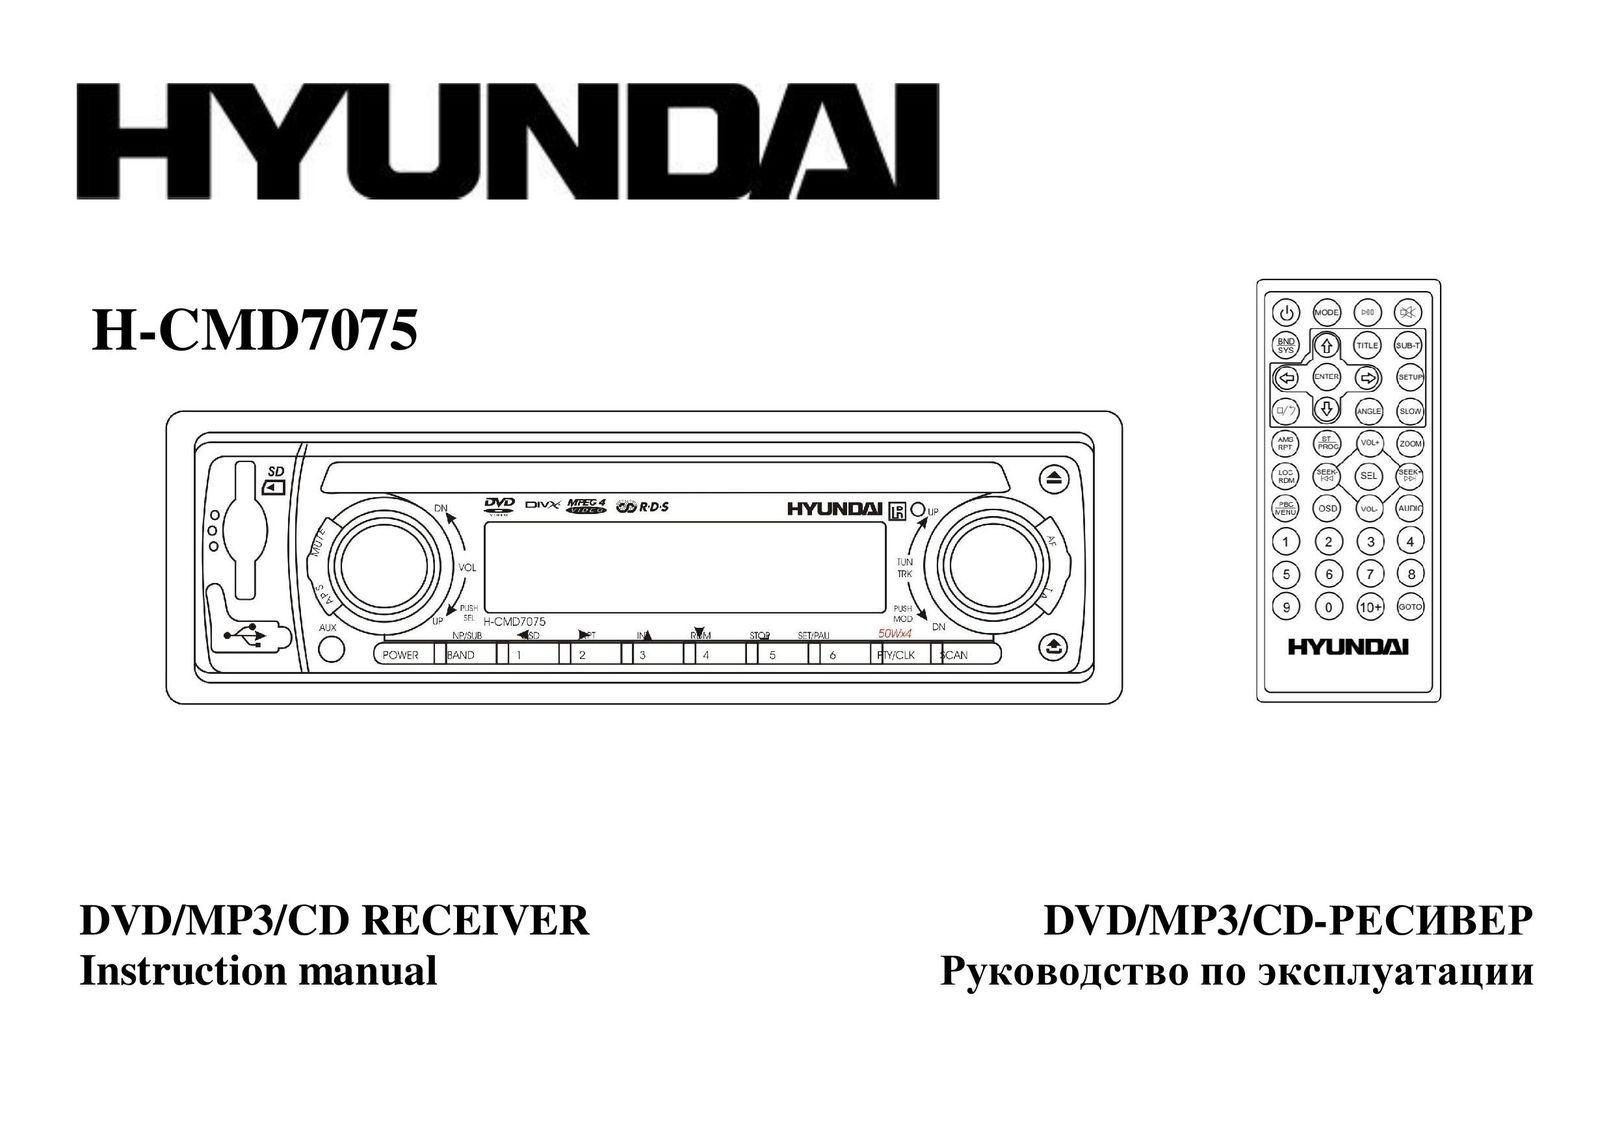 Hyundai H-CMD7075 Car Stereo System User Manual